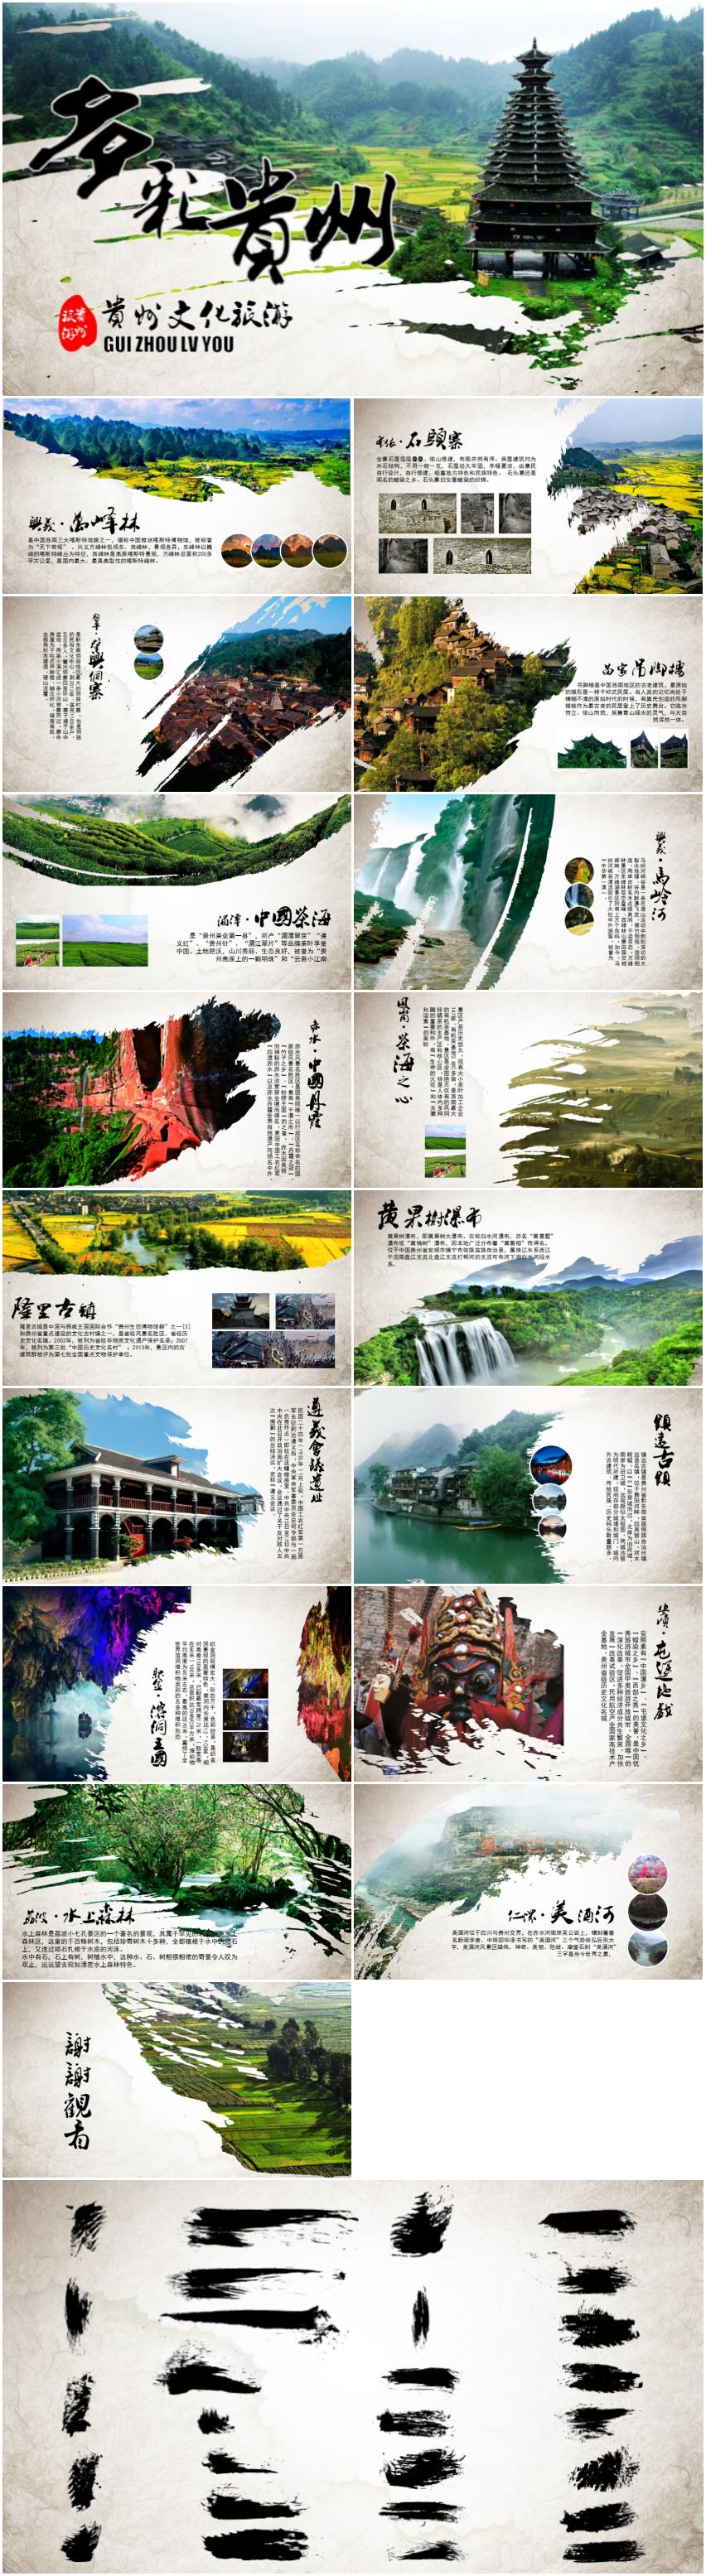 贵州文化旅游宣传推广ppt模板